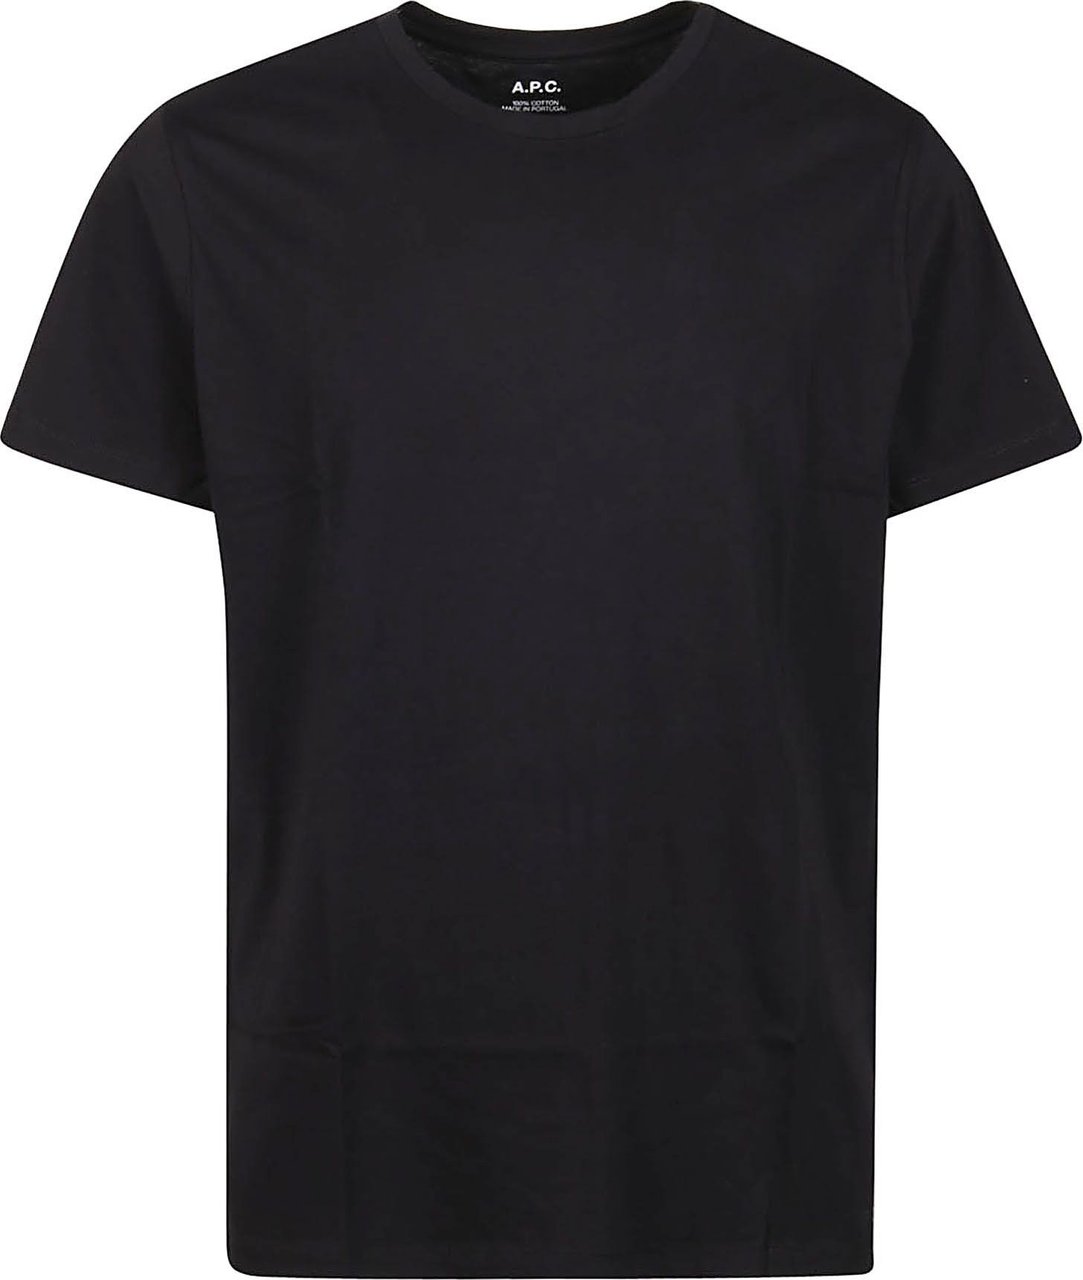 A.P.C. Arnold T-shirt Black Zwart